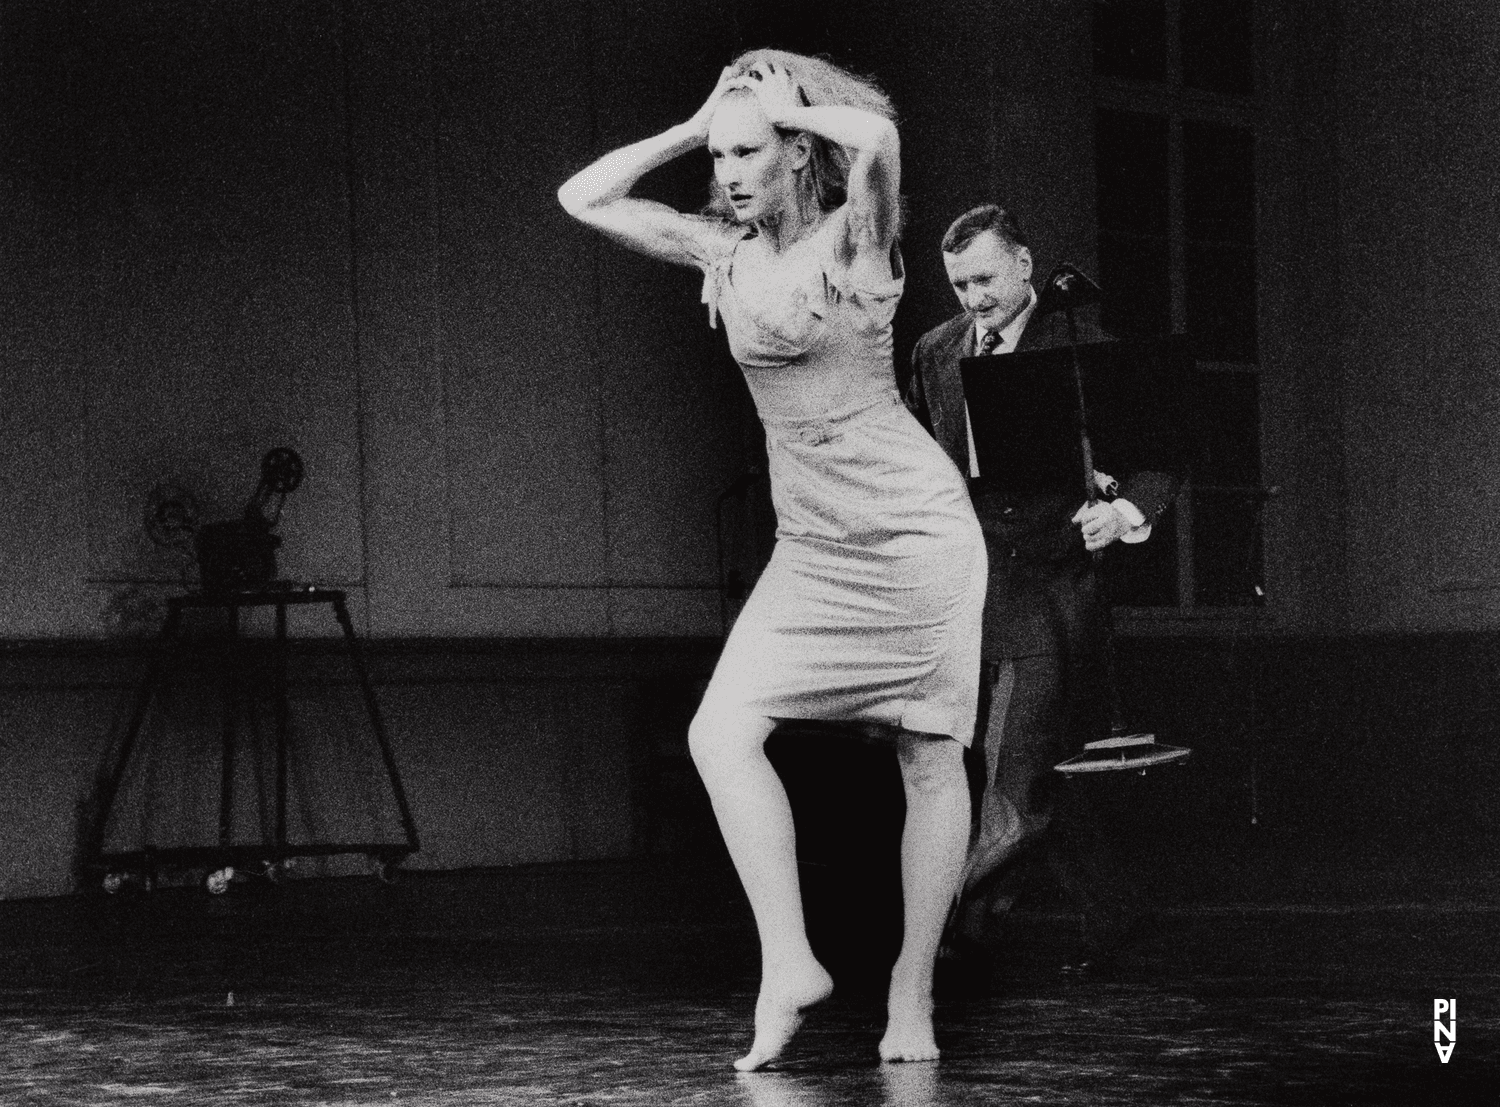 Julie Shanahan and Jan Minařík in “Kontakthof” by Pina Bausch with Tanztheater Wuppertal at Schauspielhaus Wuppertal (Germany), Feb. 21, 2000